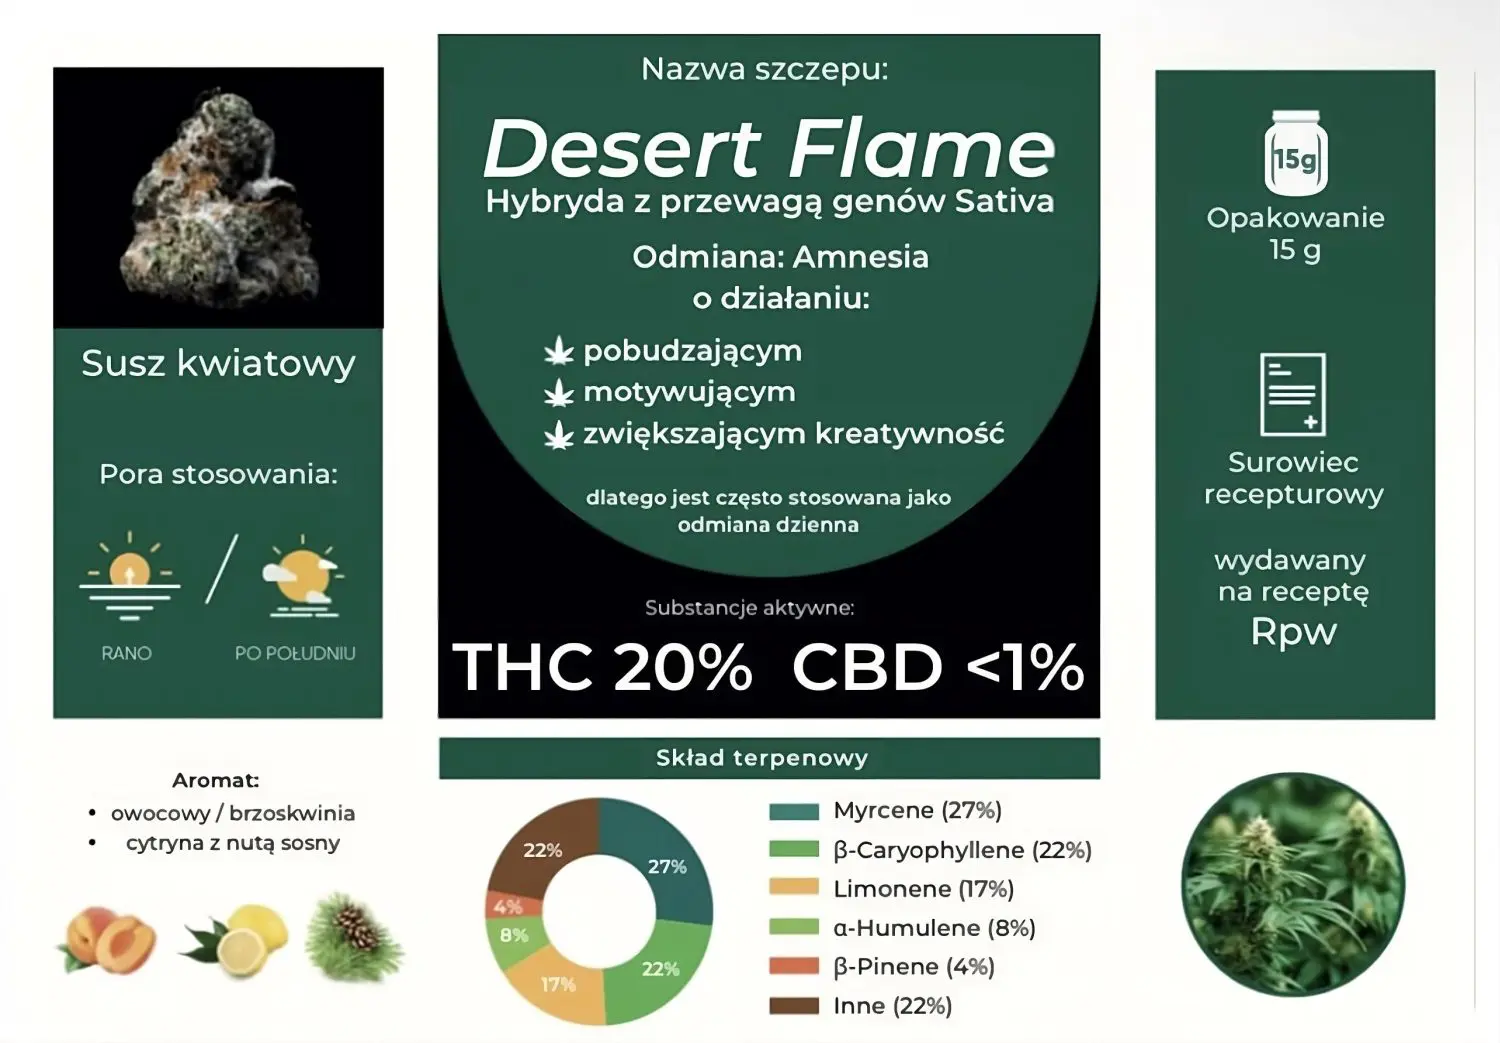 Grafika informacyjna przedstawiająca szczegóły odmiany marihuany o nazwie "Desert Flame". Na lewym panelu znajduje się zdjęcie suszu kwiatowego z podaną porą stosowania: rano i po południu, a także opisem aromatu: owocowy/brzoskwinia, cytryna z nutą sosny. Środkowy panel to tytułowa karta odmiany z nazwą "Desert Flame", wskazaniem na dominację genów Sativa w odmianie Amnesia, działaniem pobudzającym, motywującym i zwiększającym kreatywność, stąd jest często stosowana jako odmiana dzienna. Podane są substancje aktywne: THC 20% i CBD poniżej 1%. Na dolnym środku widoczny jest kołowy diagram procentowego składu terpenowego: mircen 27%, kariofilen 22%, limonen 17%, humulen 8%, pinen 4% i inne 22%. Prawy panel pokazuje informacje o opakowaniu: 15g oraz że jest to surowiec recepturowy, wydawany na receptę RPW. Na dole umieszczono zielonkawe zdjęcie rośliny marihuany. 